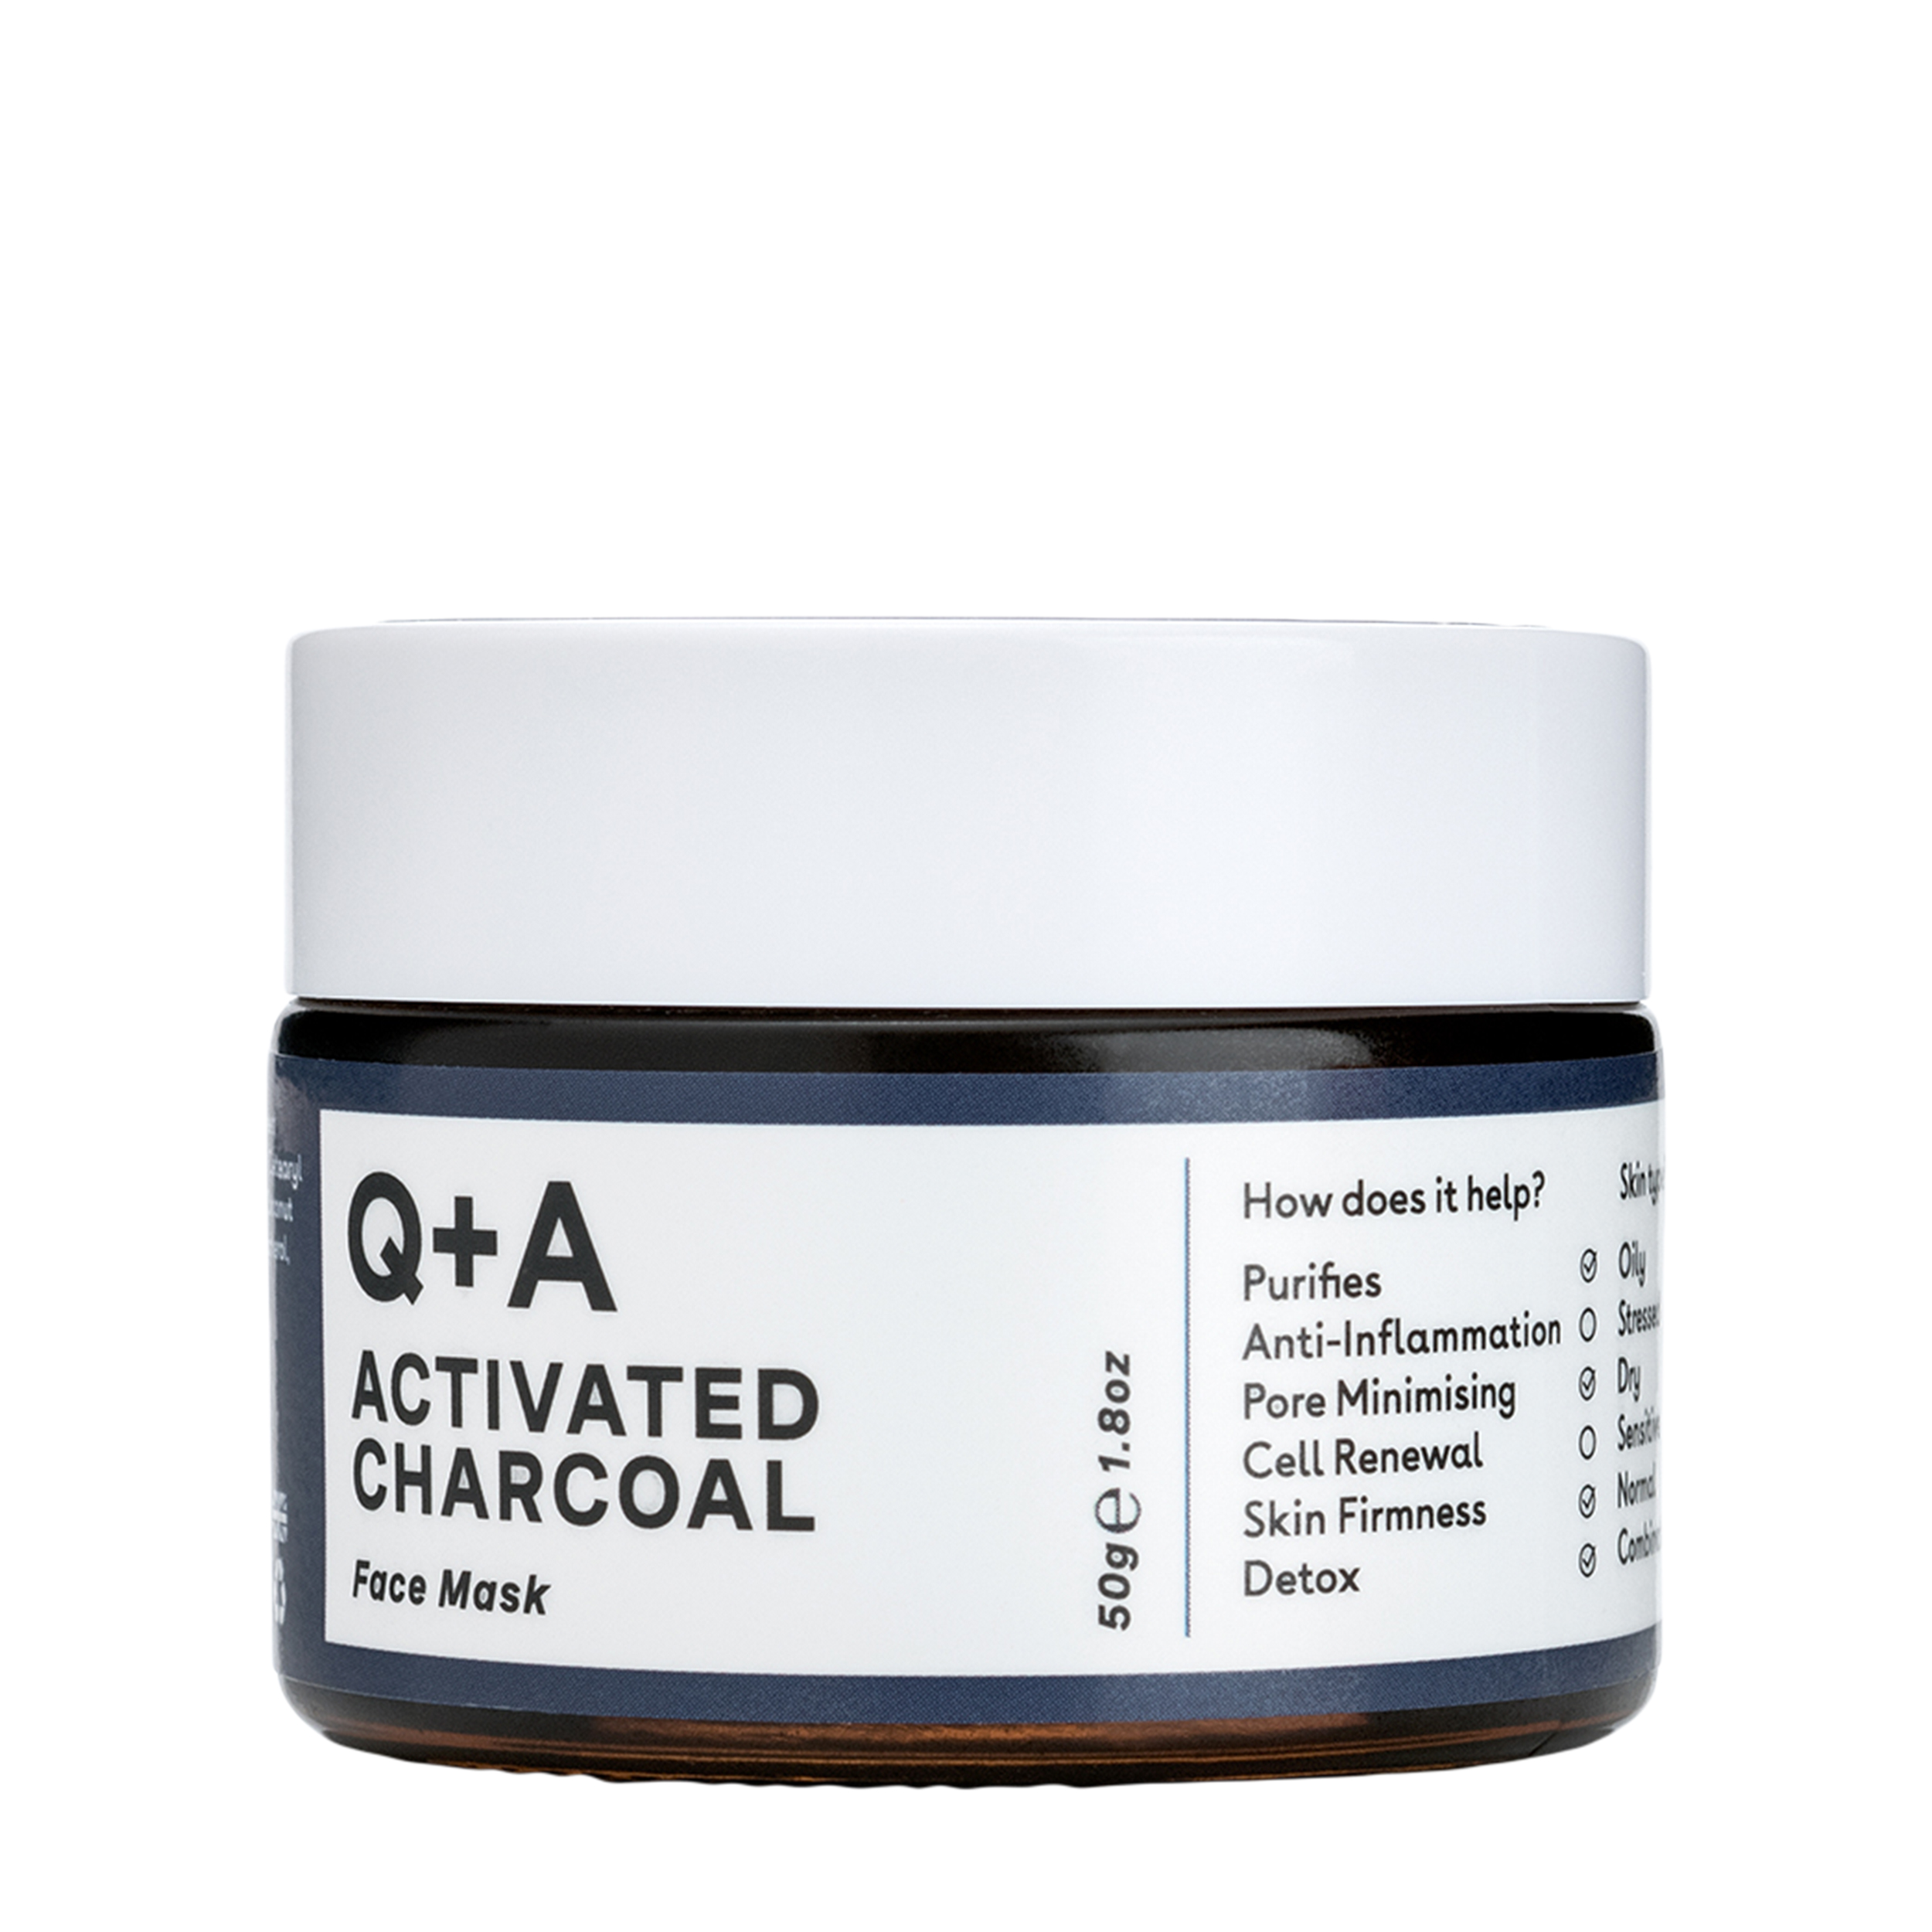 Q+A Q+A Очищающая маска для лица Activated Charcoal 50 гр